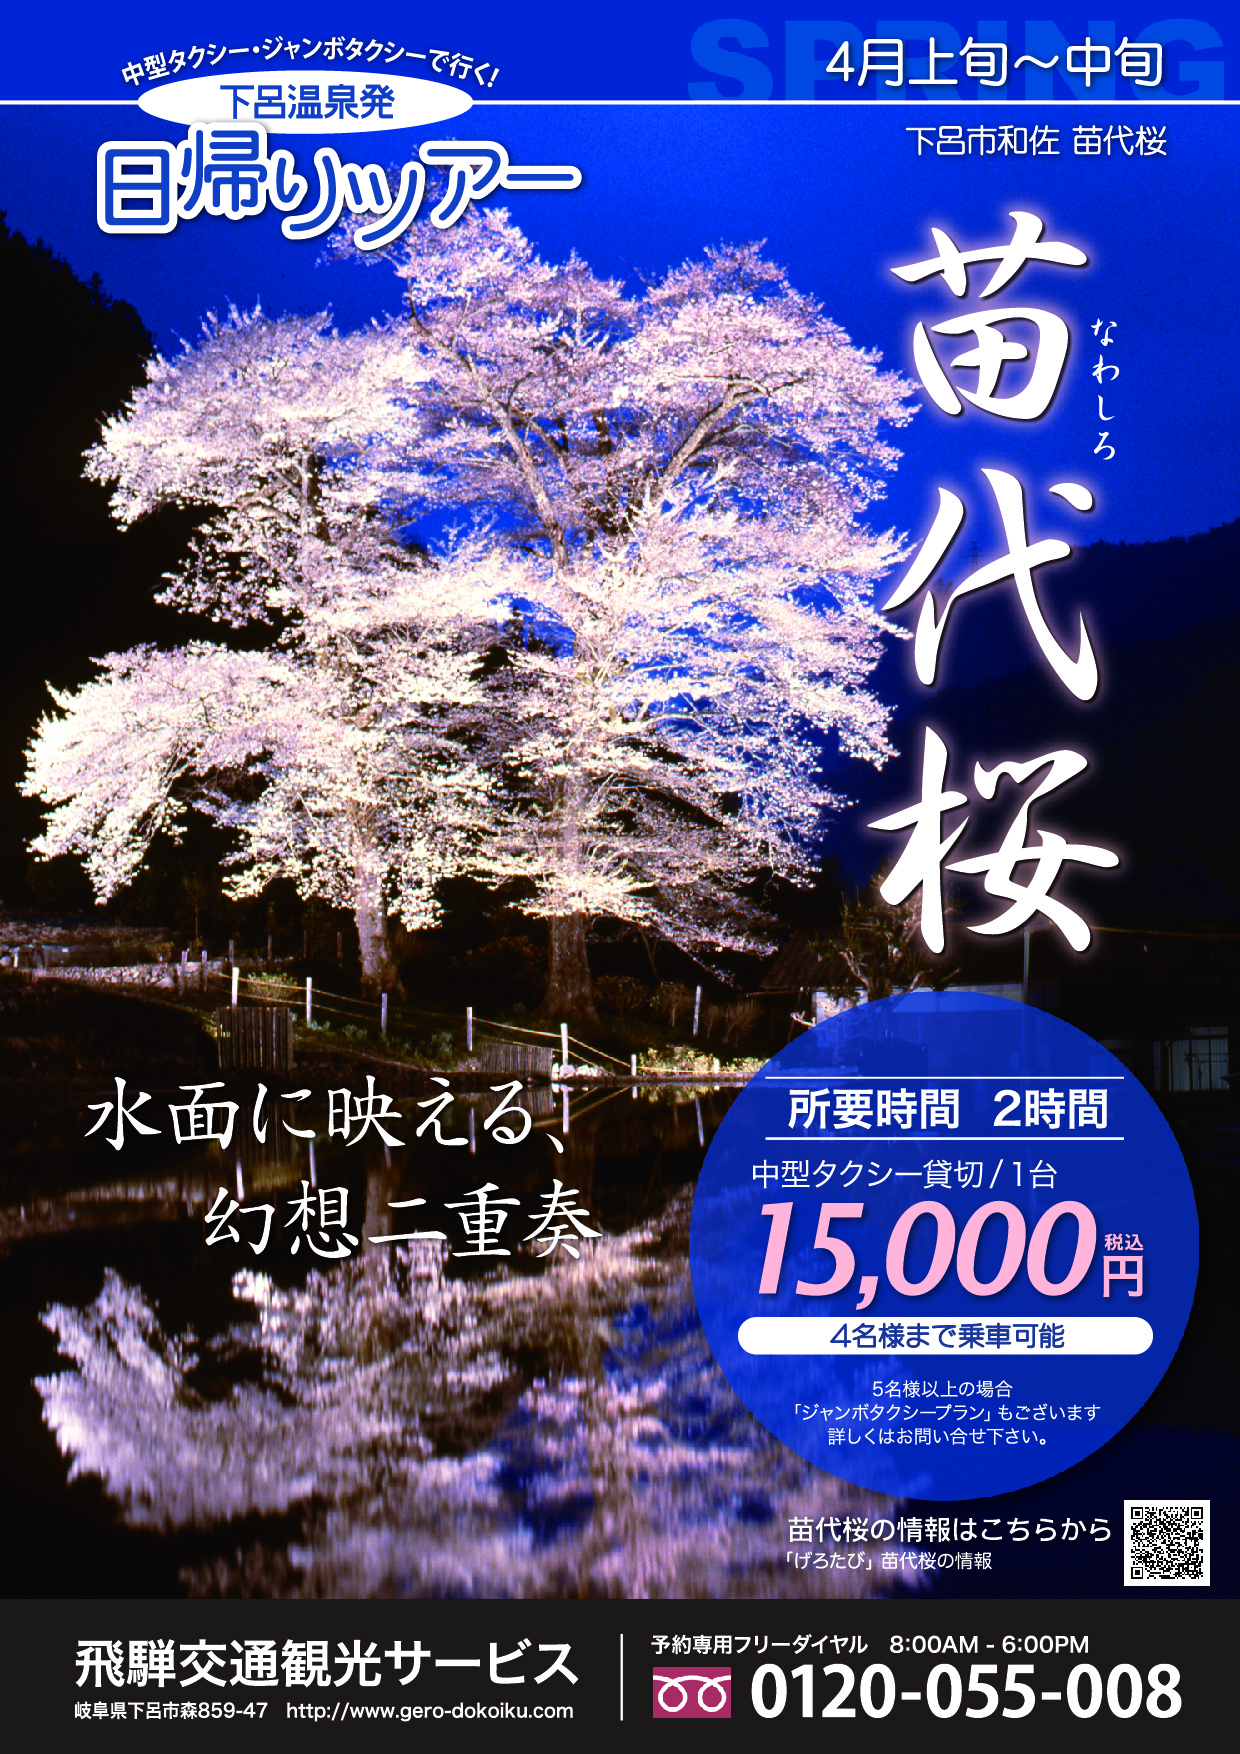 【ヒダタクシー】下呂の桜の名所『苗代桜』をご案内します。